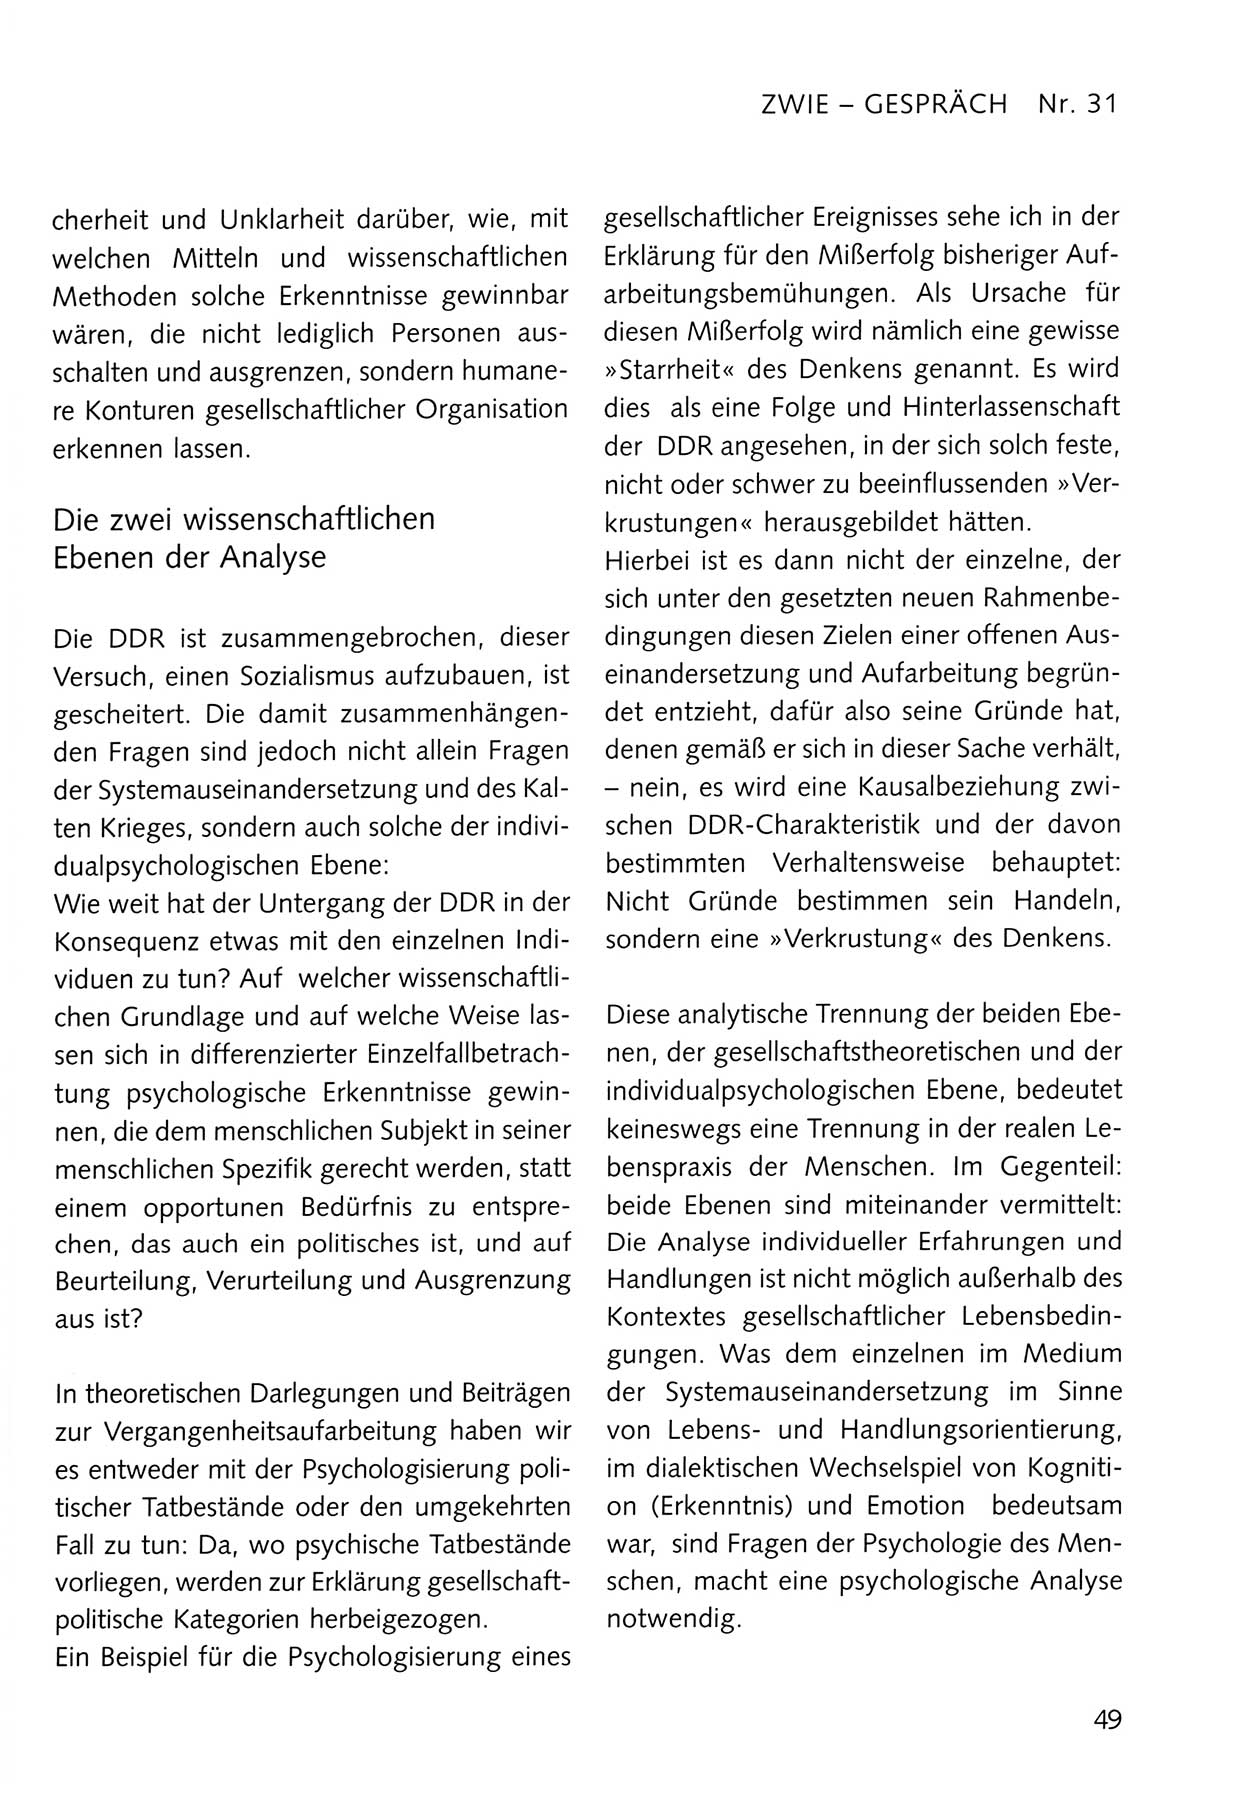 Zwie-Gespräch, Beiträge zum Umgang mit der Staatssicherheits-Vergangenheit [Deutsche Demokratische Republik (DDR)], Ausgabe Nr. 31, Berlin 1995, Seite 49 (Zwie-Gespr. Ausg. 31 1995, S. 49)